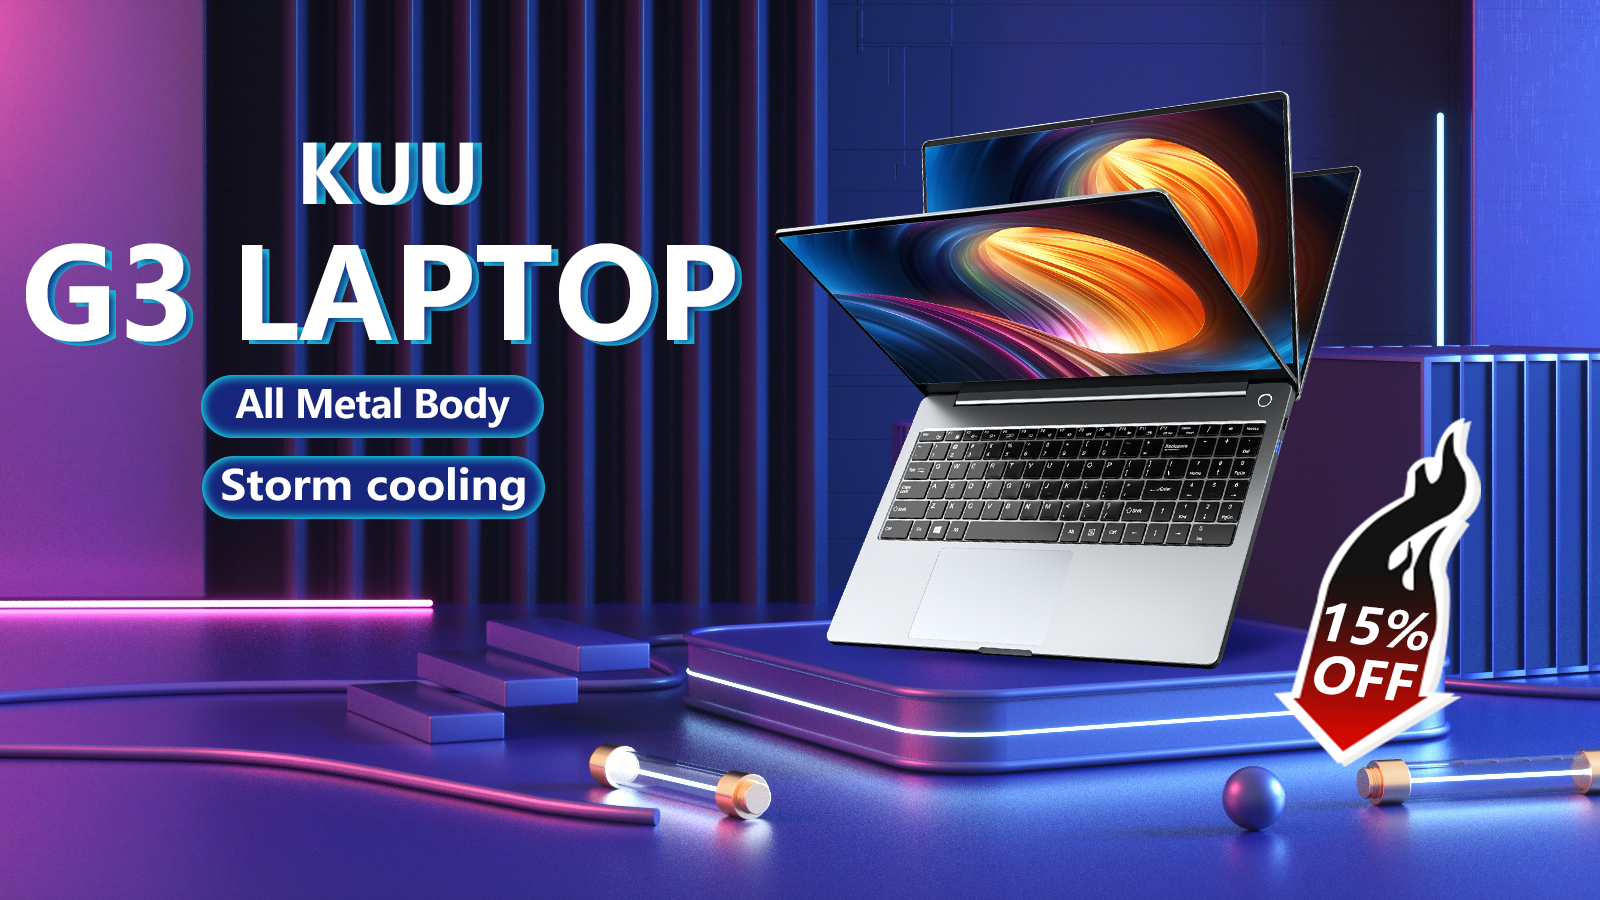 Празднование нового интернет-магазина Kuu со скидкой до 15% на все товары, и вы должны попробовать наш ноутбук G3 сейчас 2